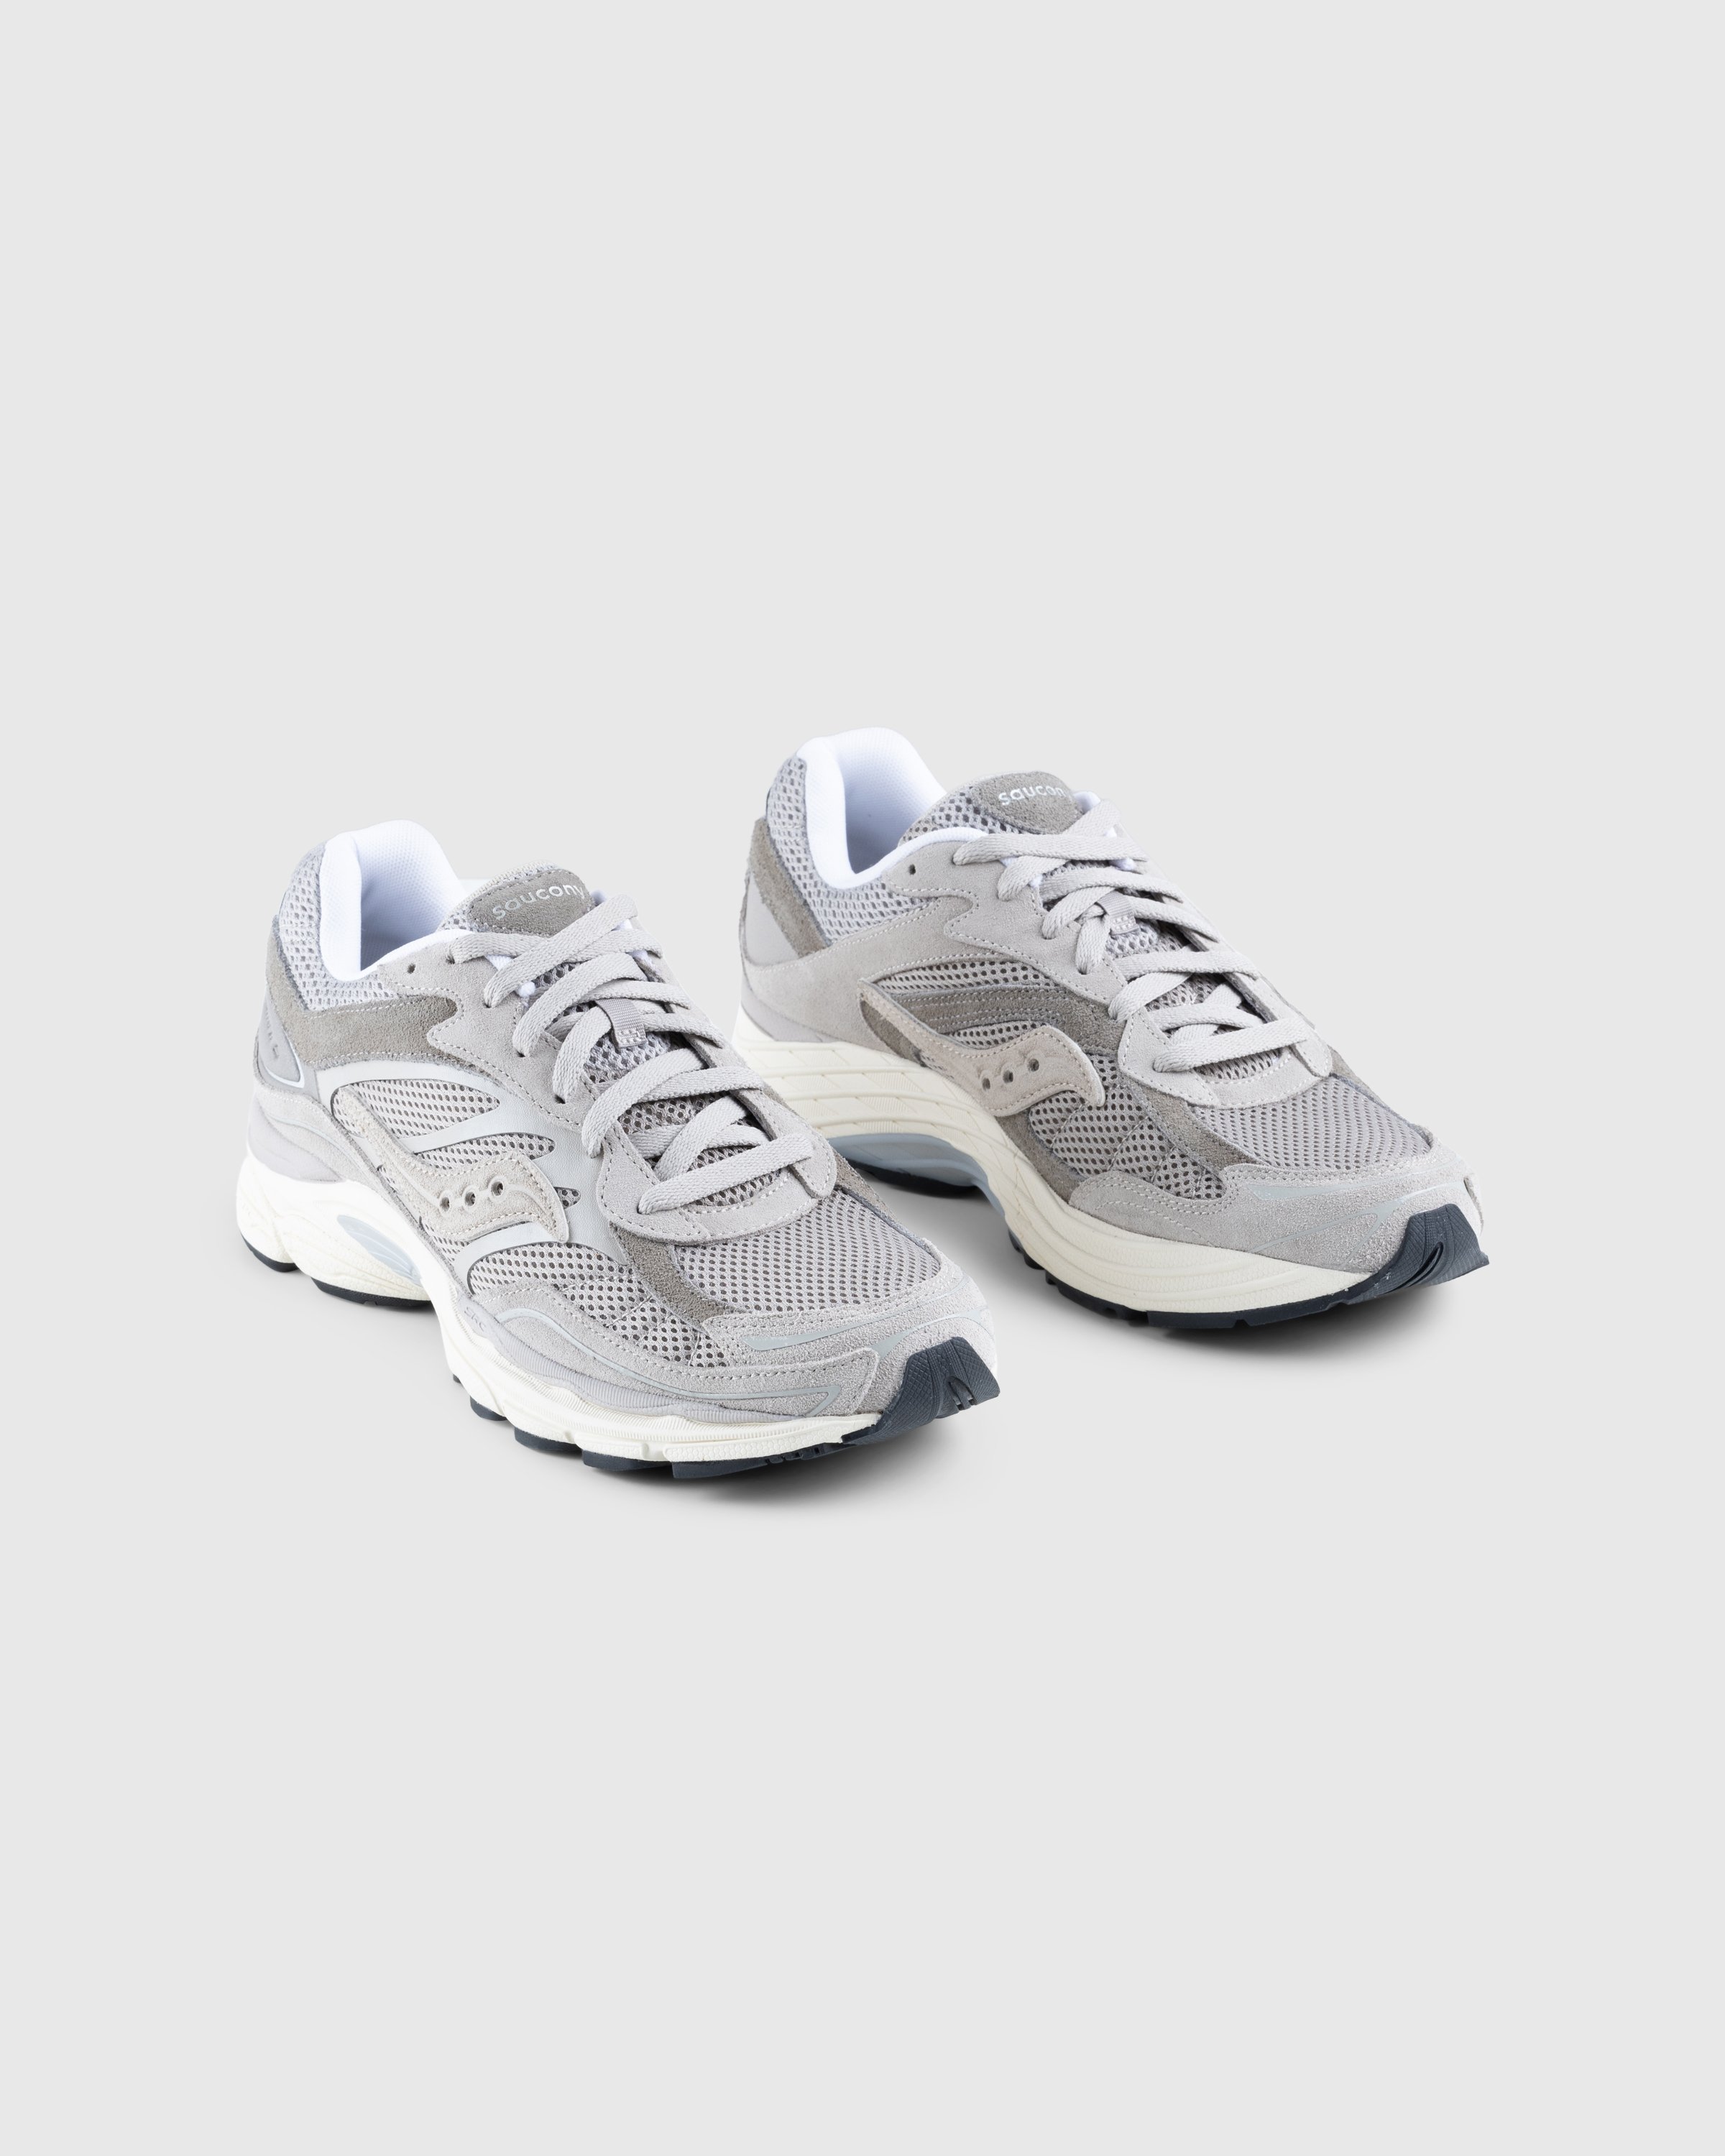 Saucony - ProGrid Omni 9 Gray - Footwear - Grey - Image 3